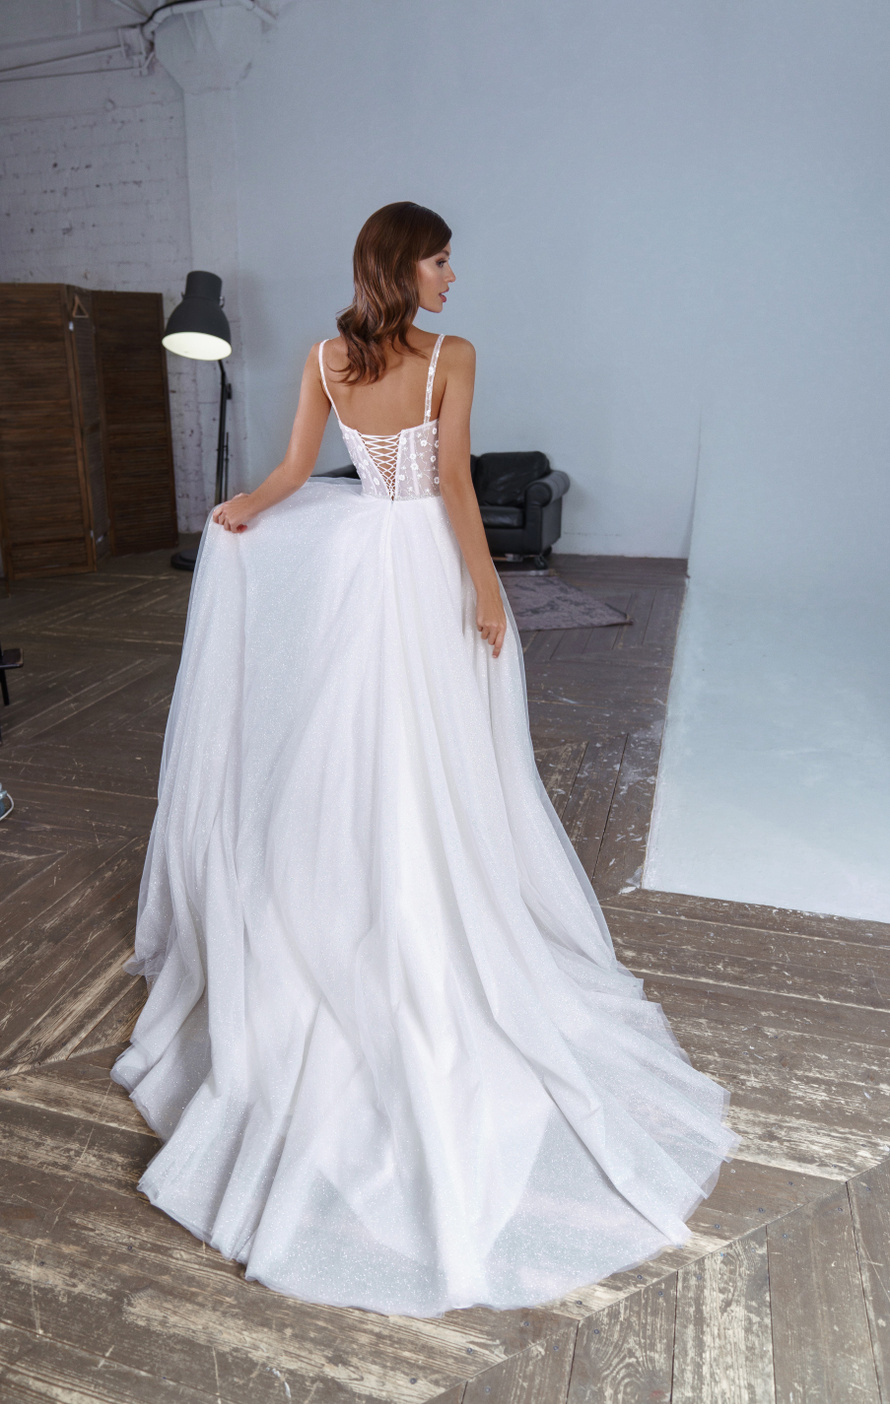 Купить свадебное платье «Флавия» Патрисия из коллекции 2020 года в Нижнем Новгороде